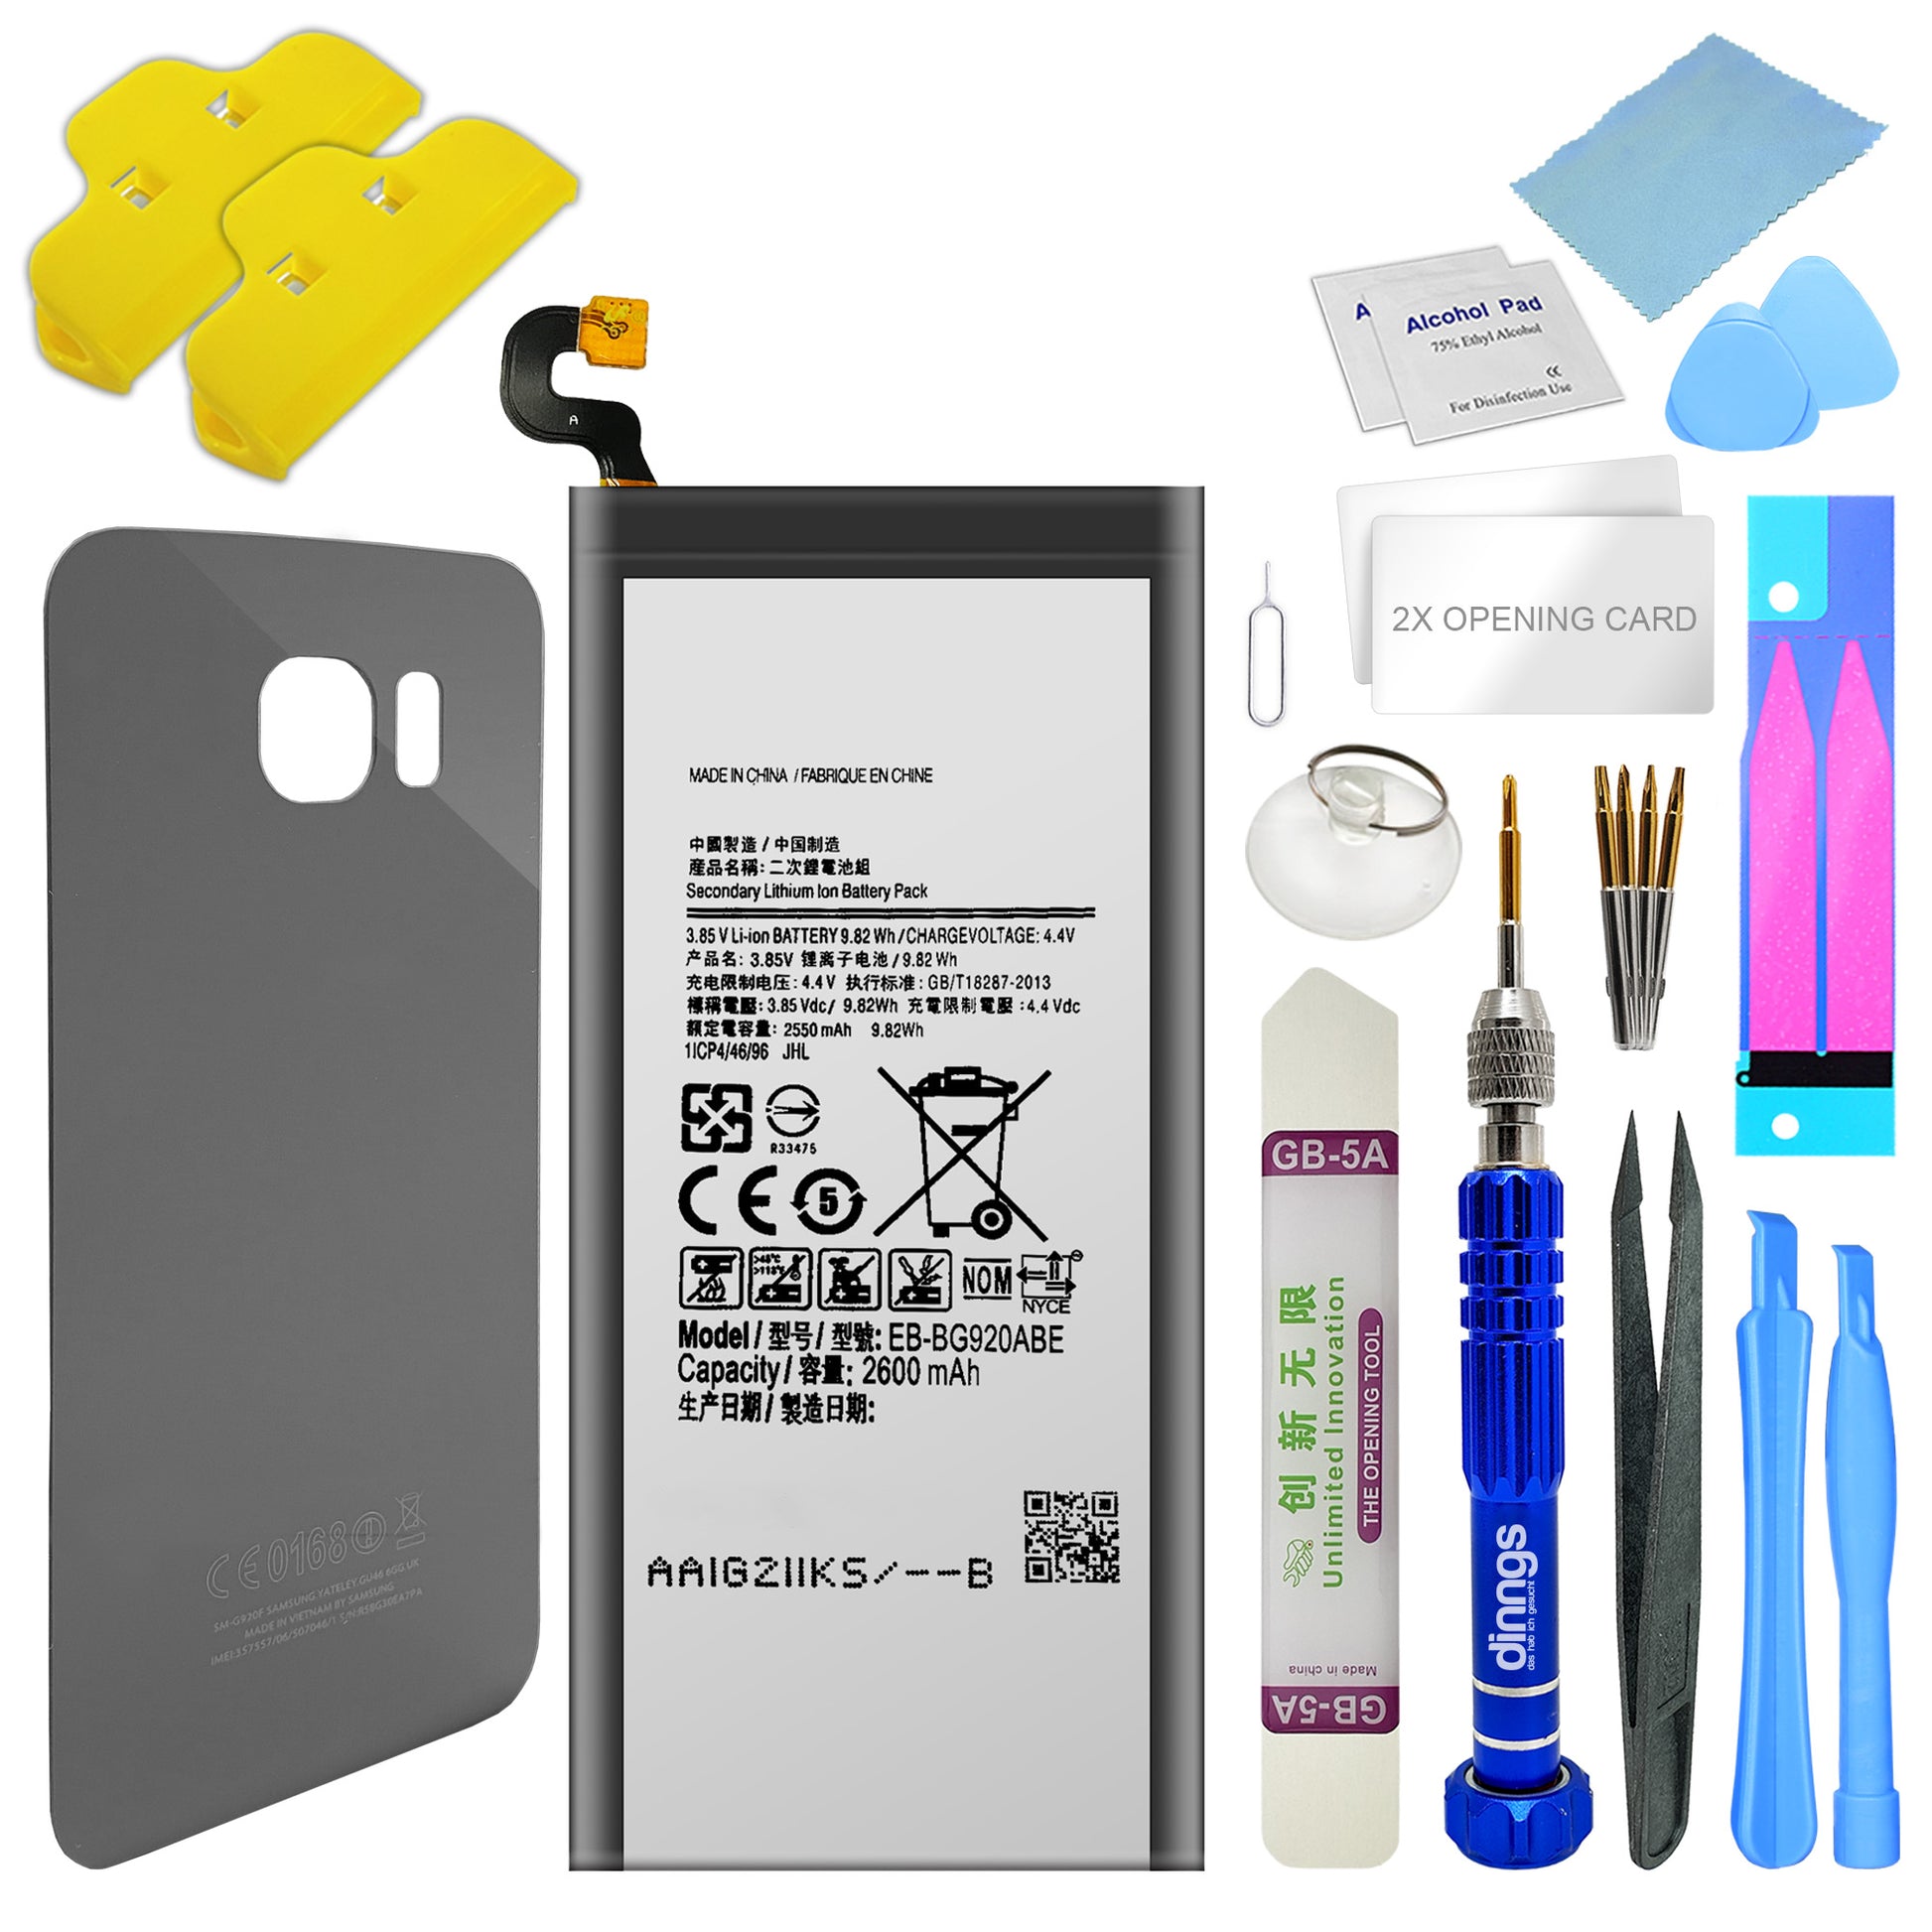 kompatibler Akku für das Samsung Galaxy S6 SM-G920F inklusive Akkudeckel Dark Blue und Werkzeug Set / Umbau Kit, im Dinngs Onlineshop erhältlich.